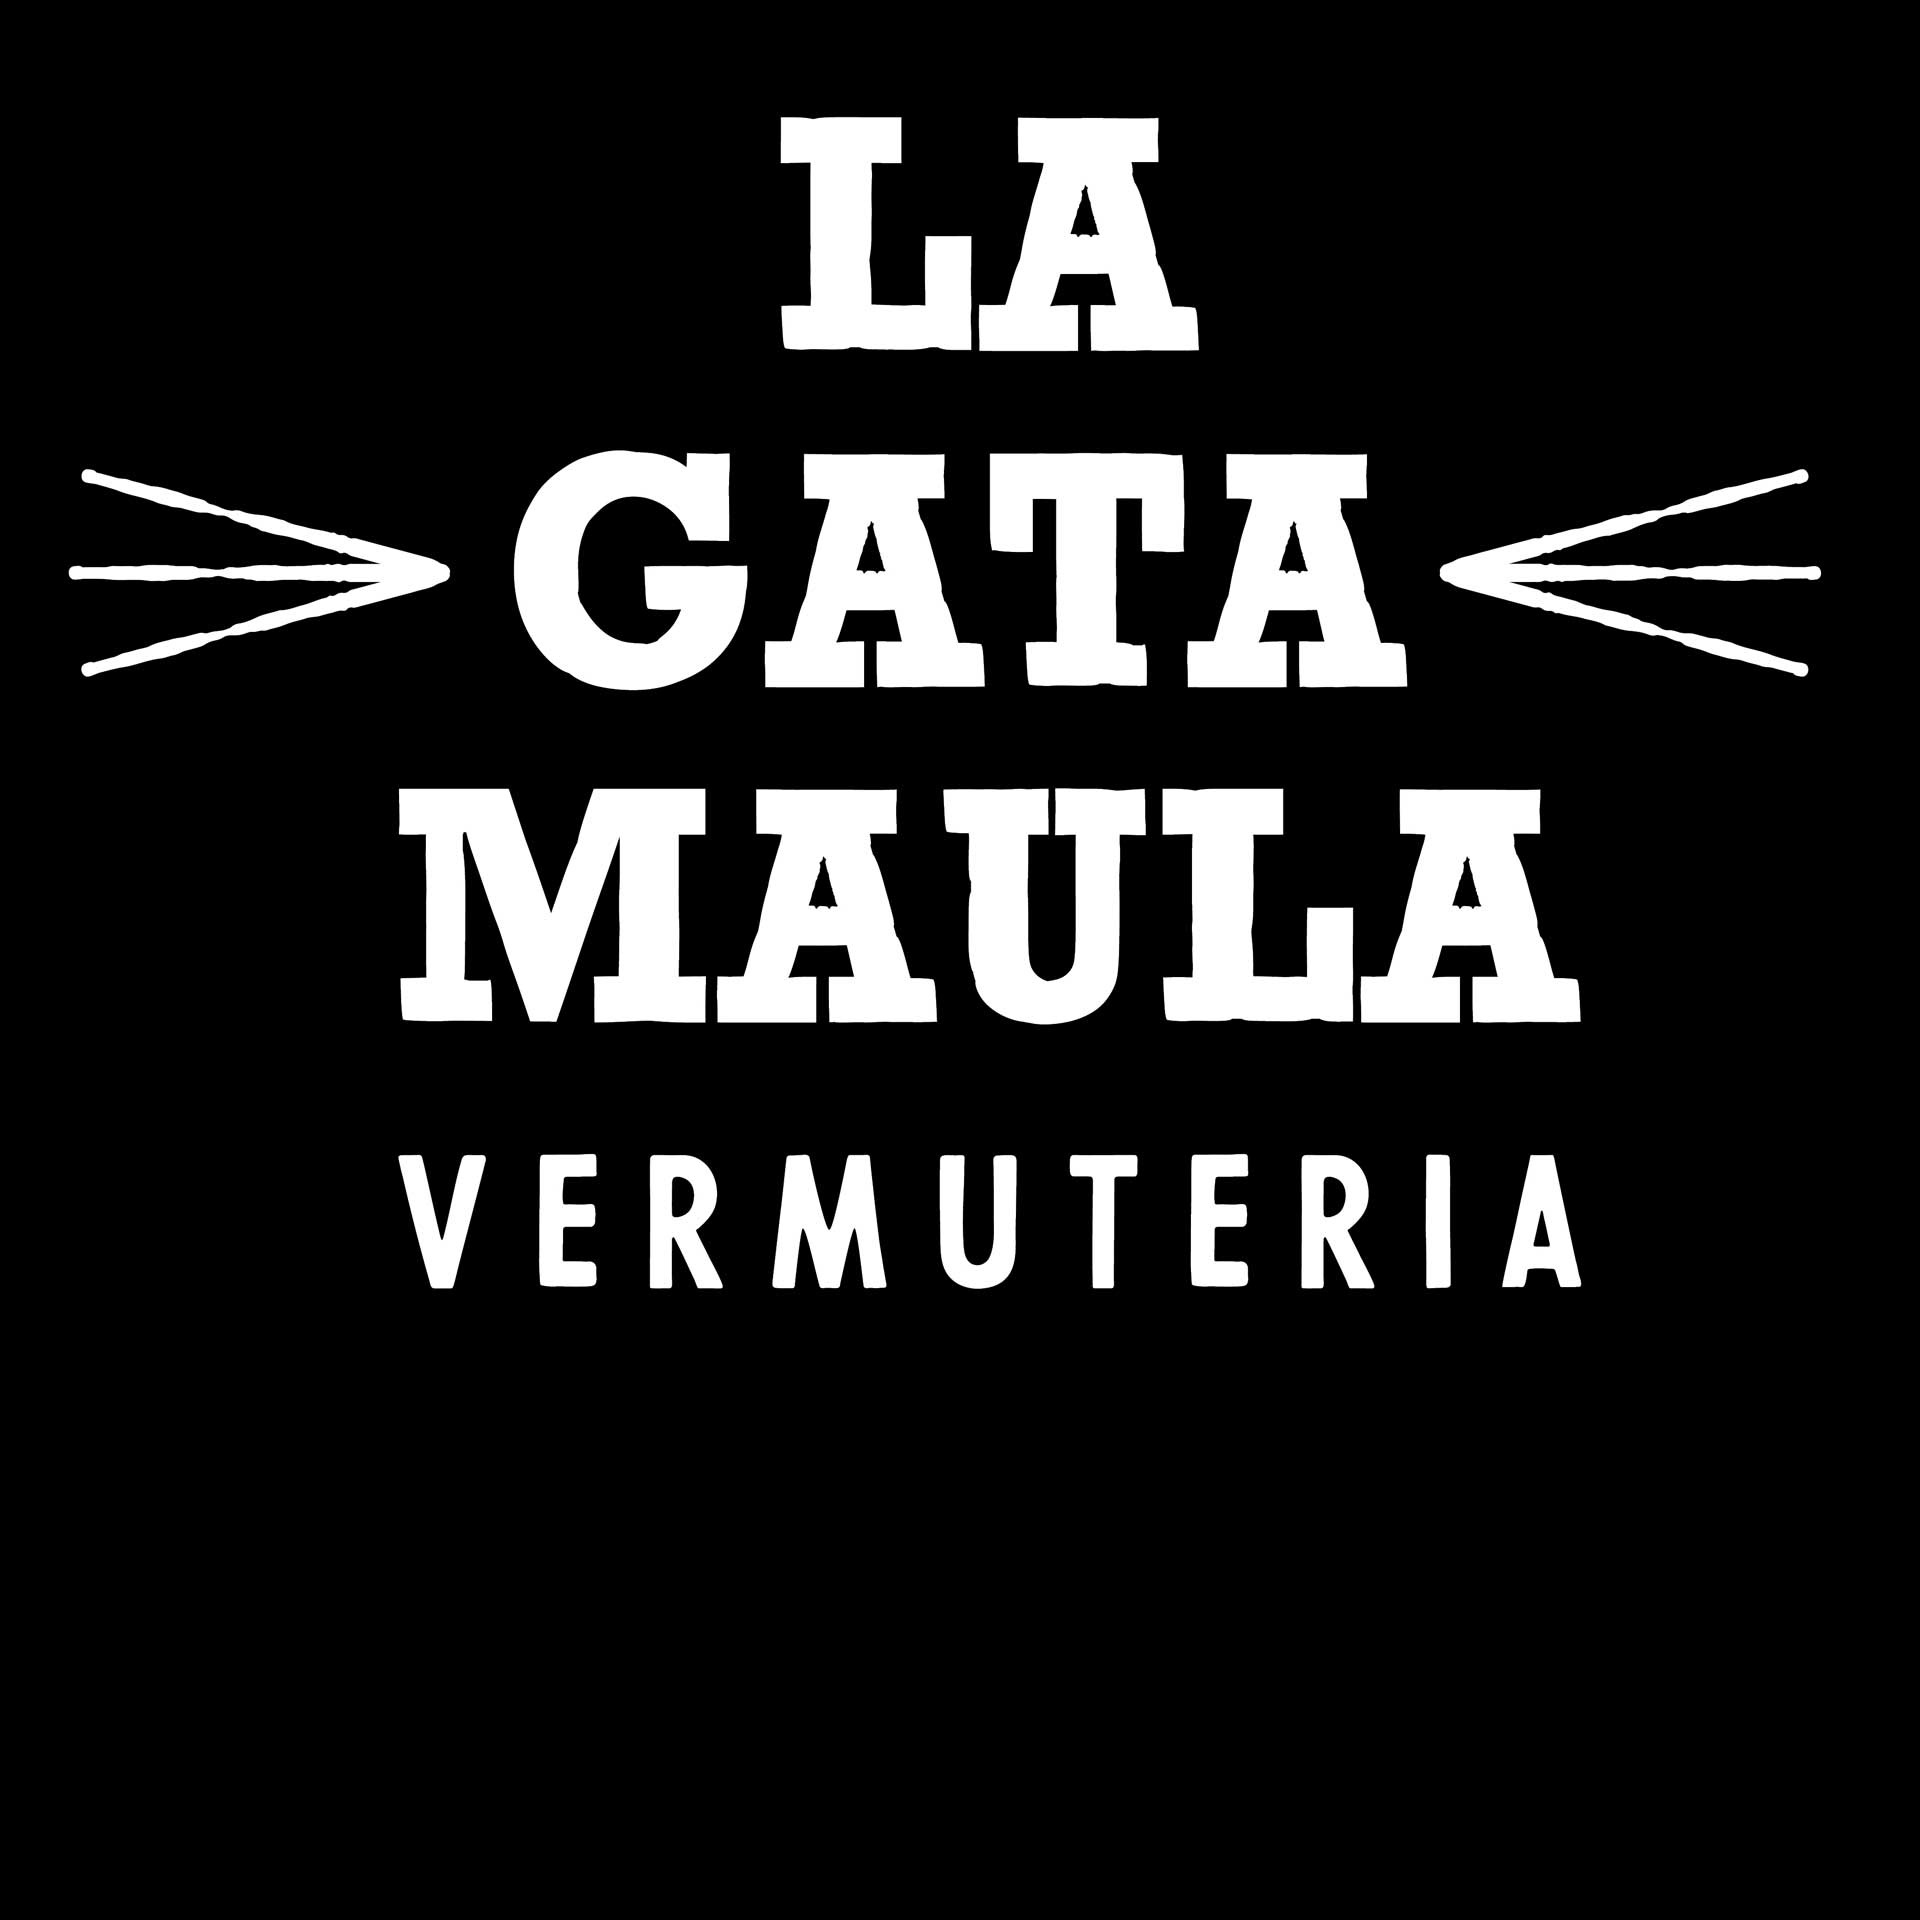 Bienvenidos al blog de La Gata Maula Vermuteria